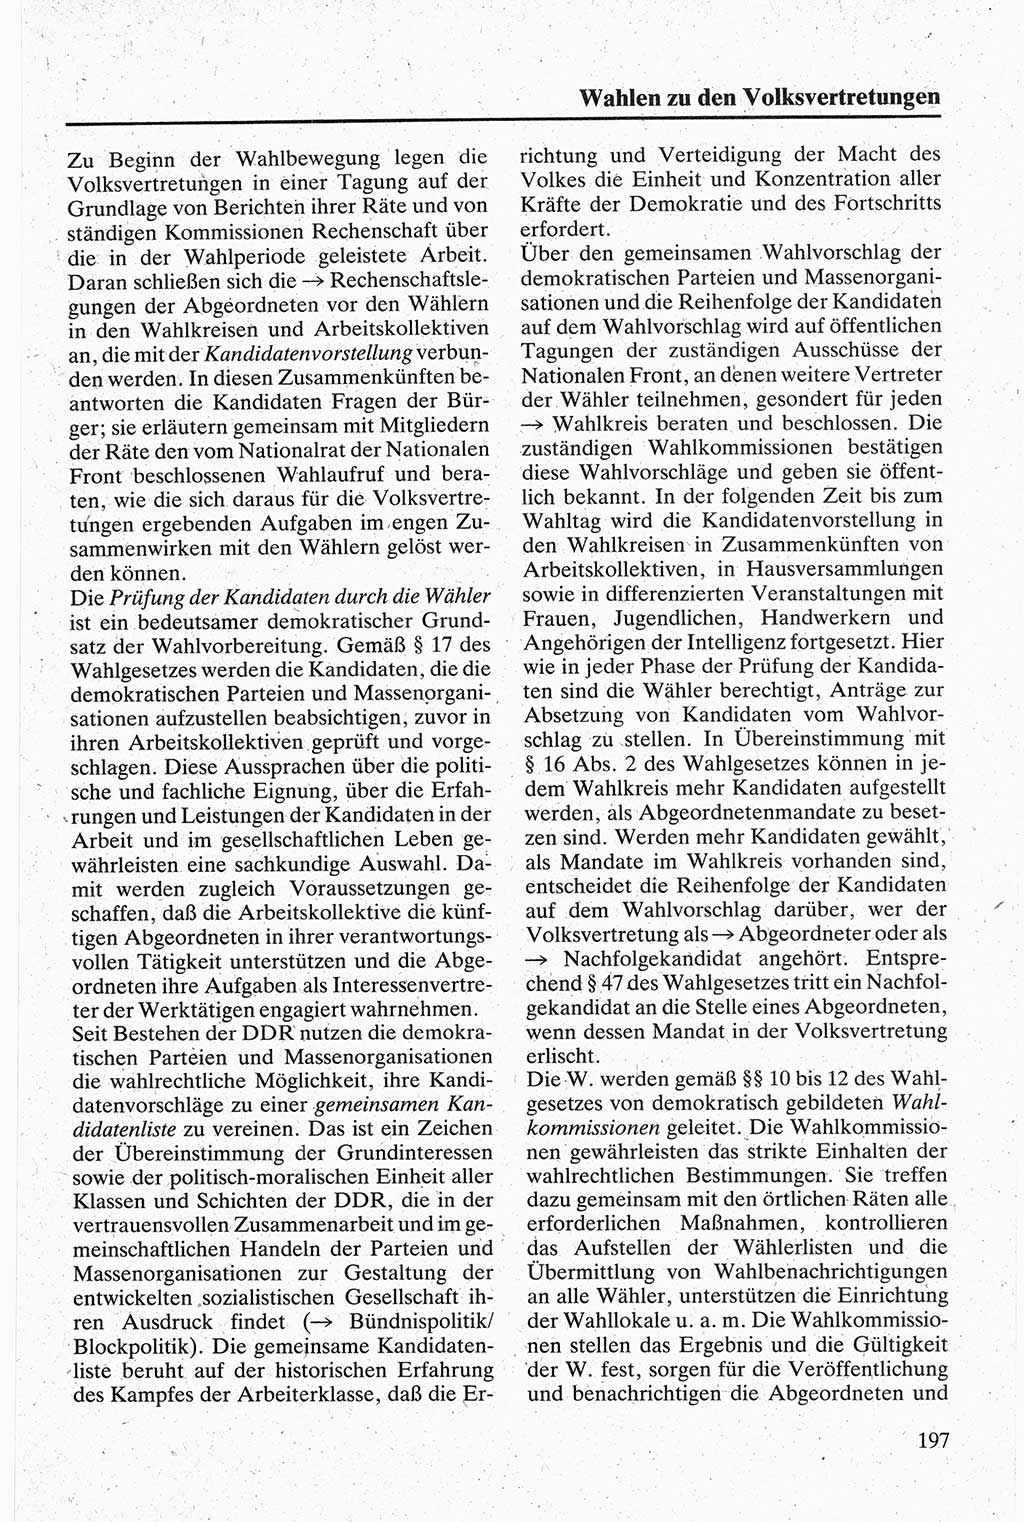 Handbuch für den Abgeordneten [Deutsche Demokratische Republik (DDR)] 1984, Seite 197 (Hb. Abg. DDR 1984, S. 197)